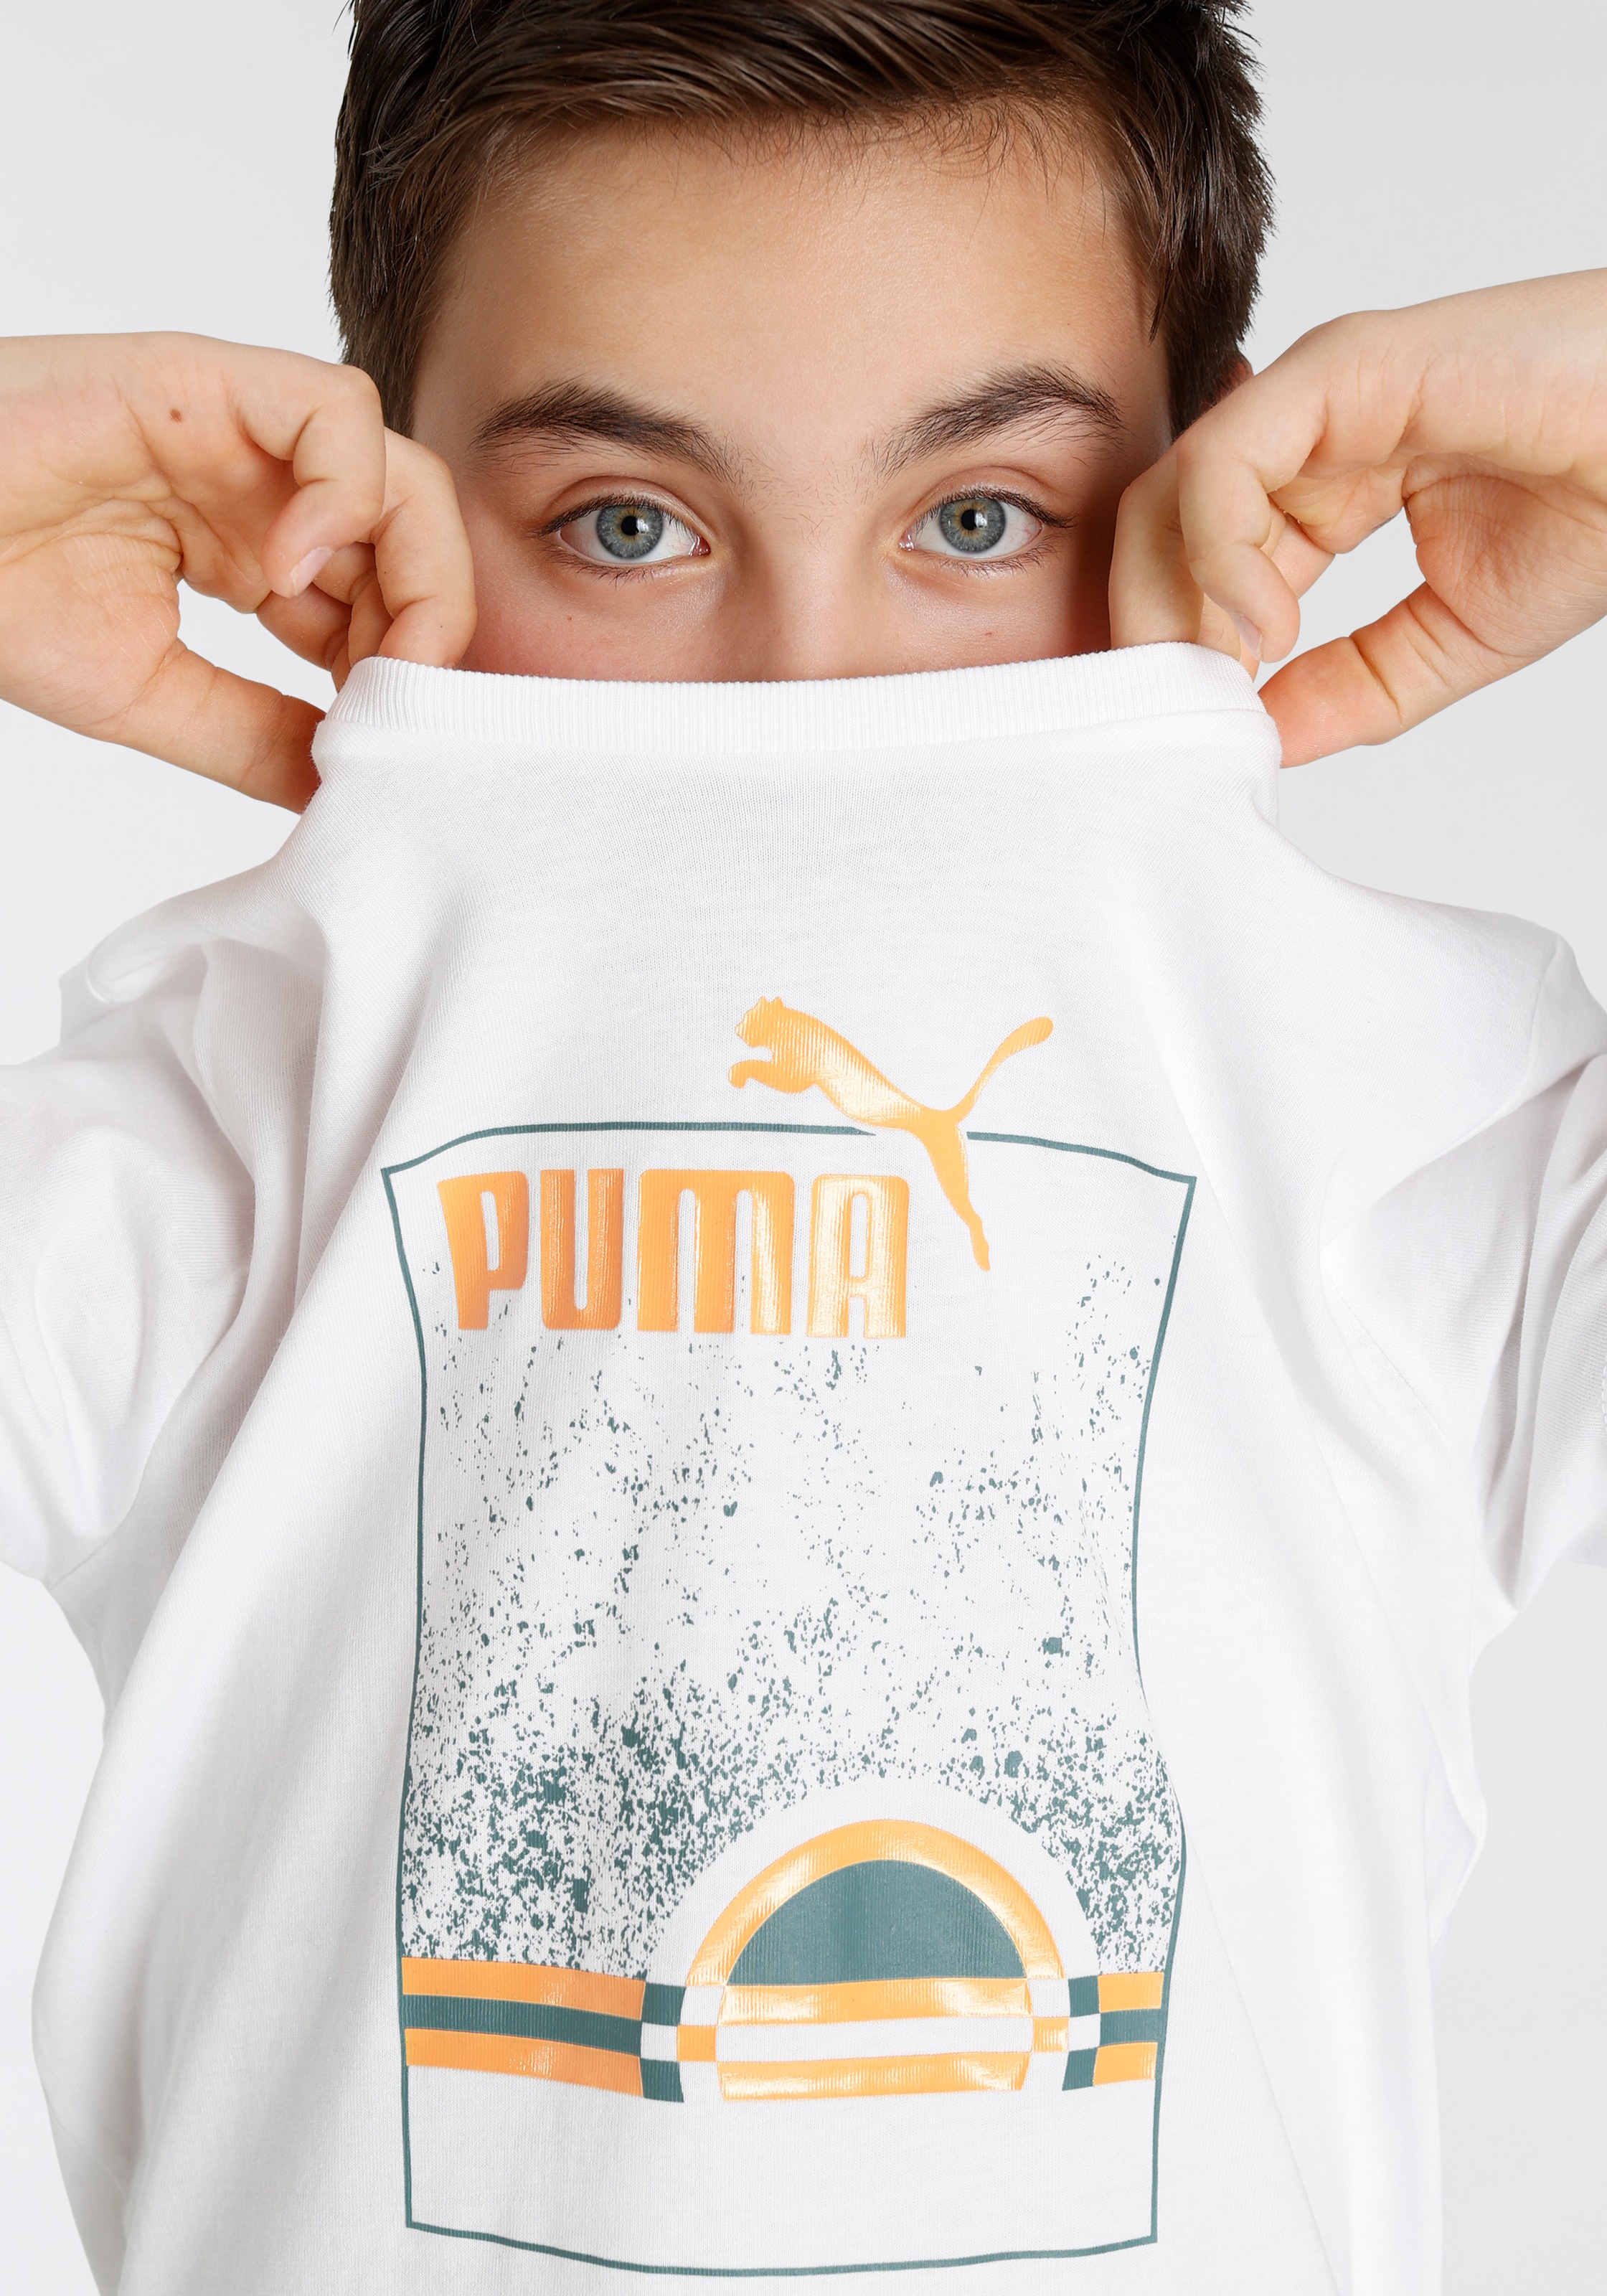 PUMA T-Shirt »ESS+ STREET ART Summer Tee B (Summe« im OTTO Online Shop